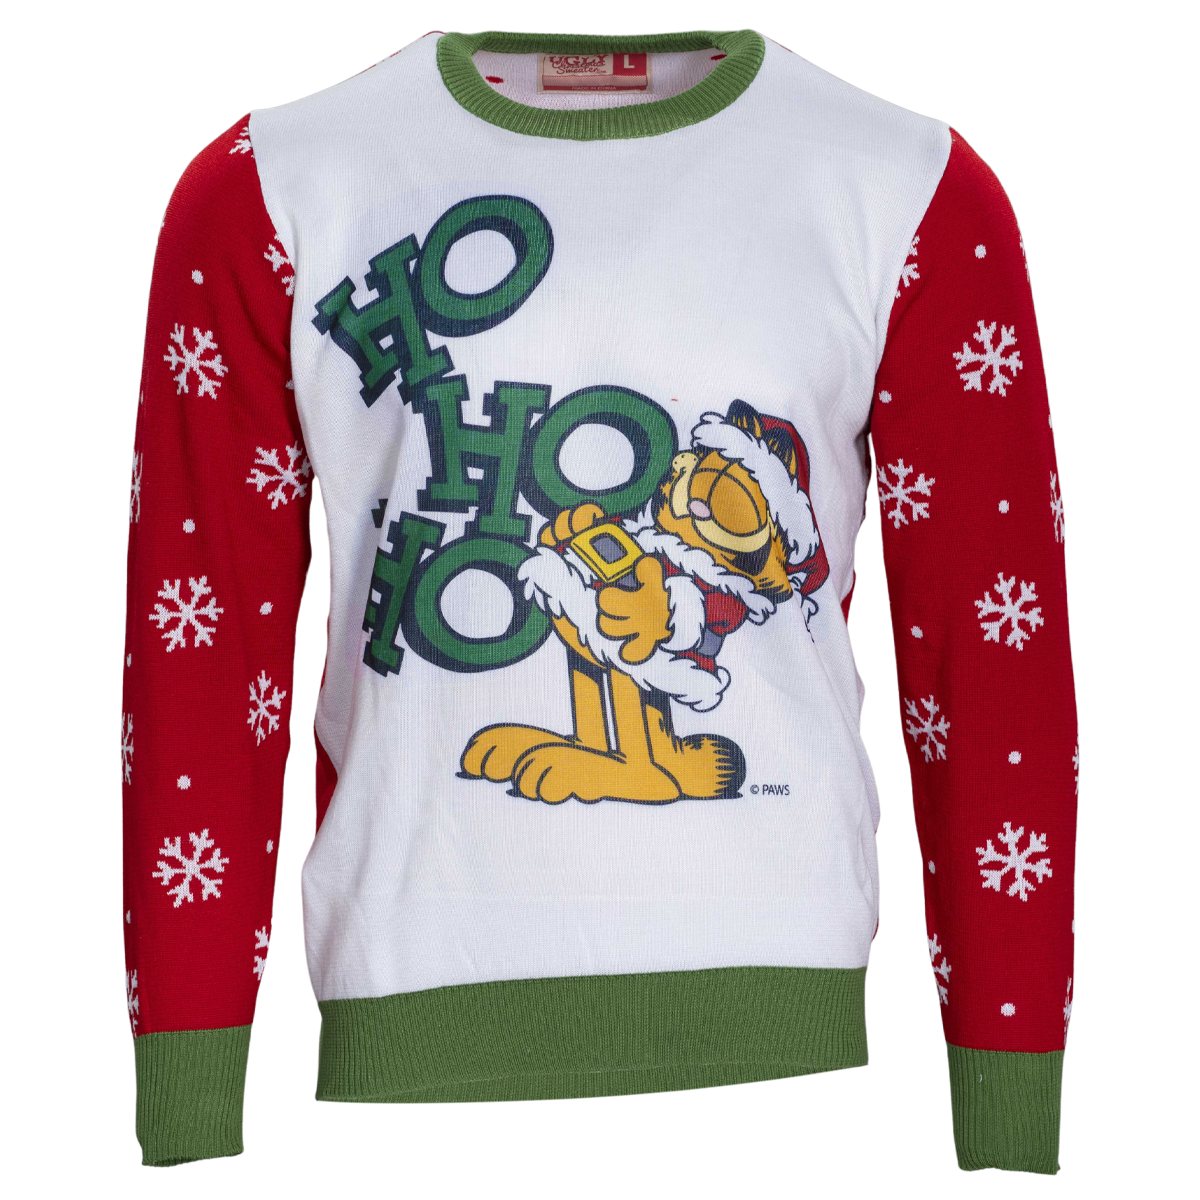 HO HO HO Garfield Santa Sweater